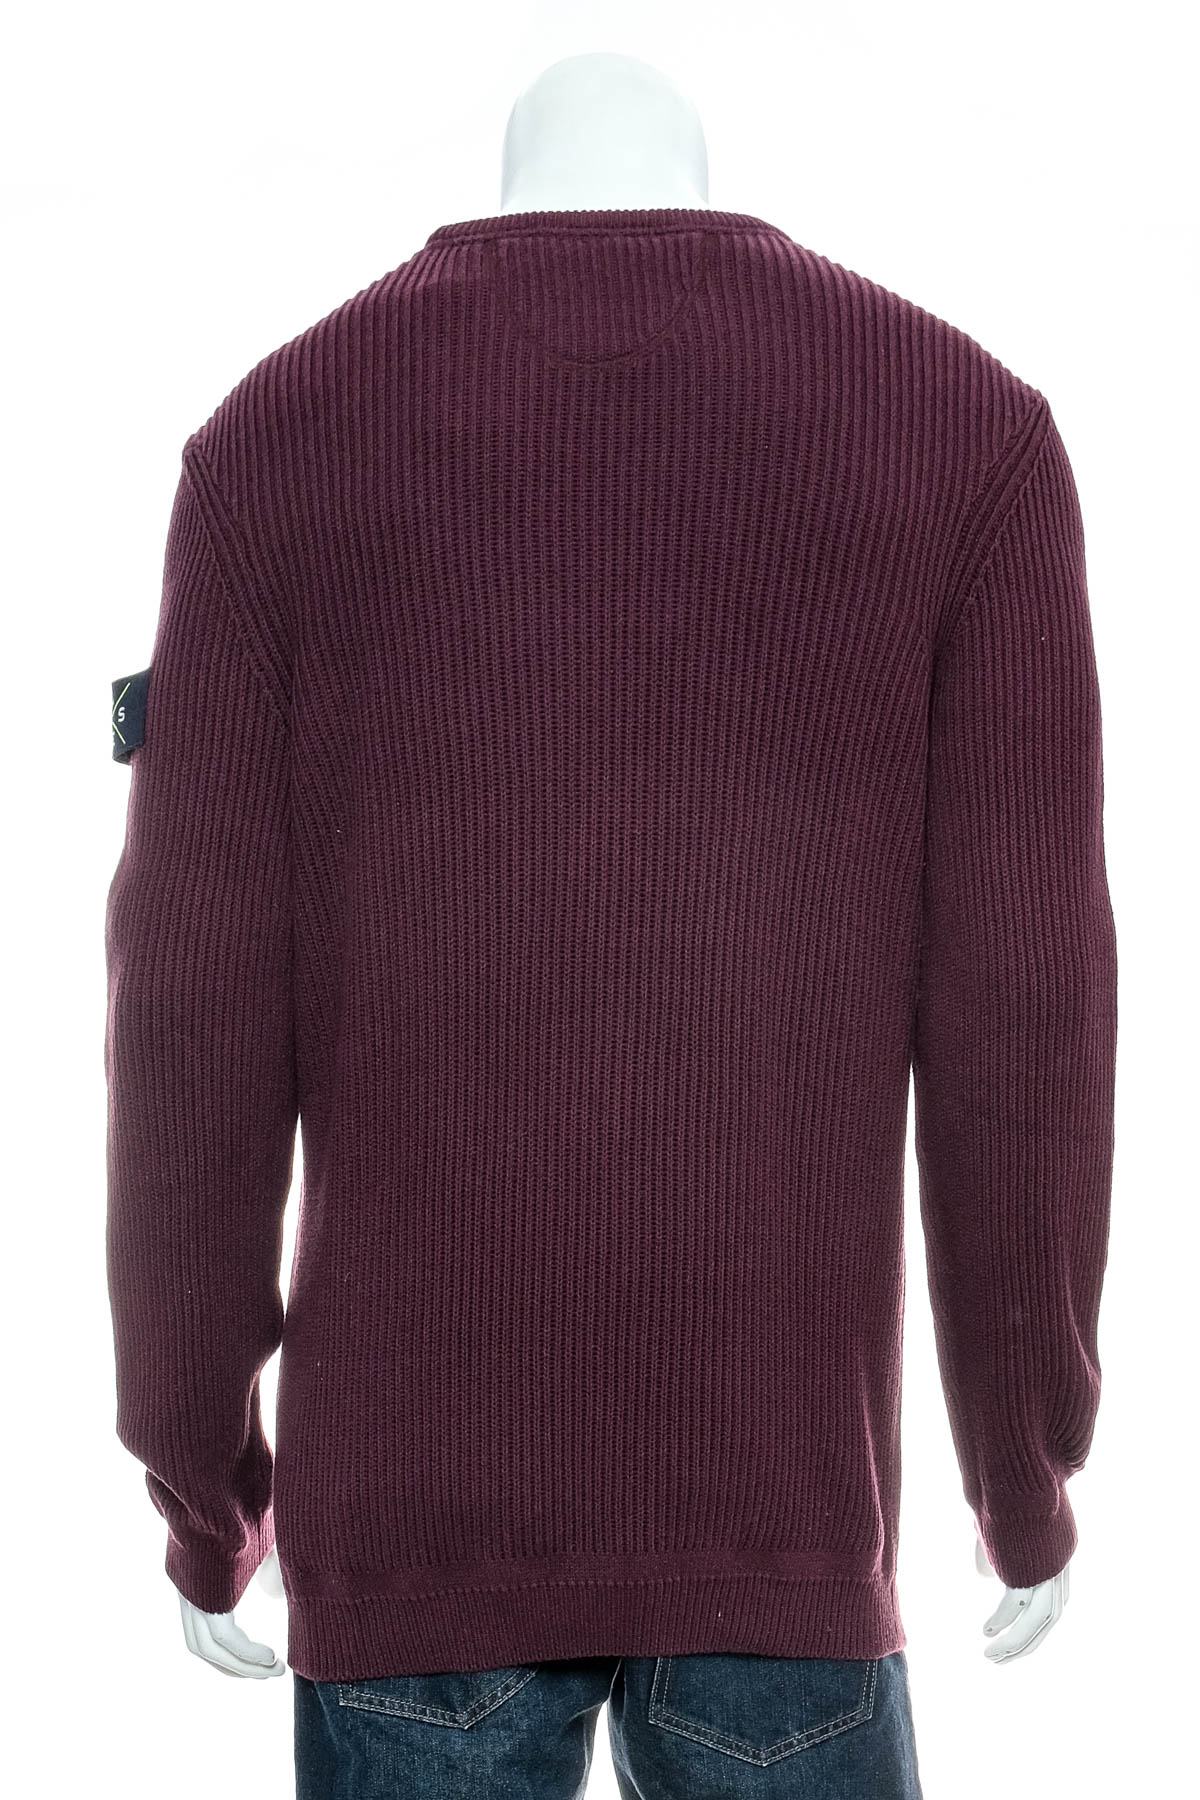 Men's sweater - Lerros - 1